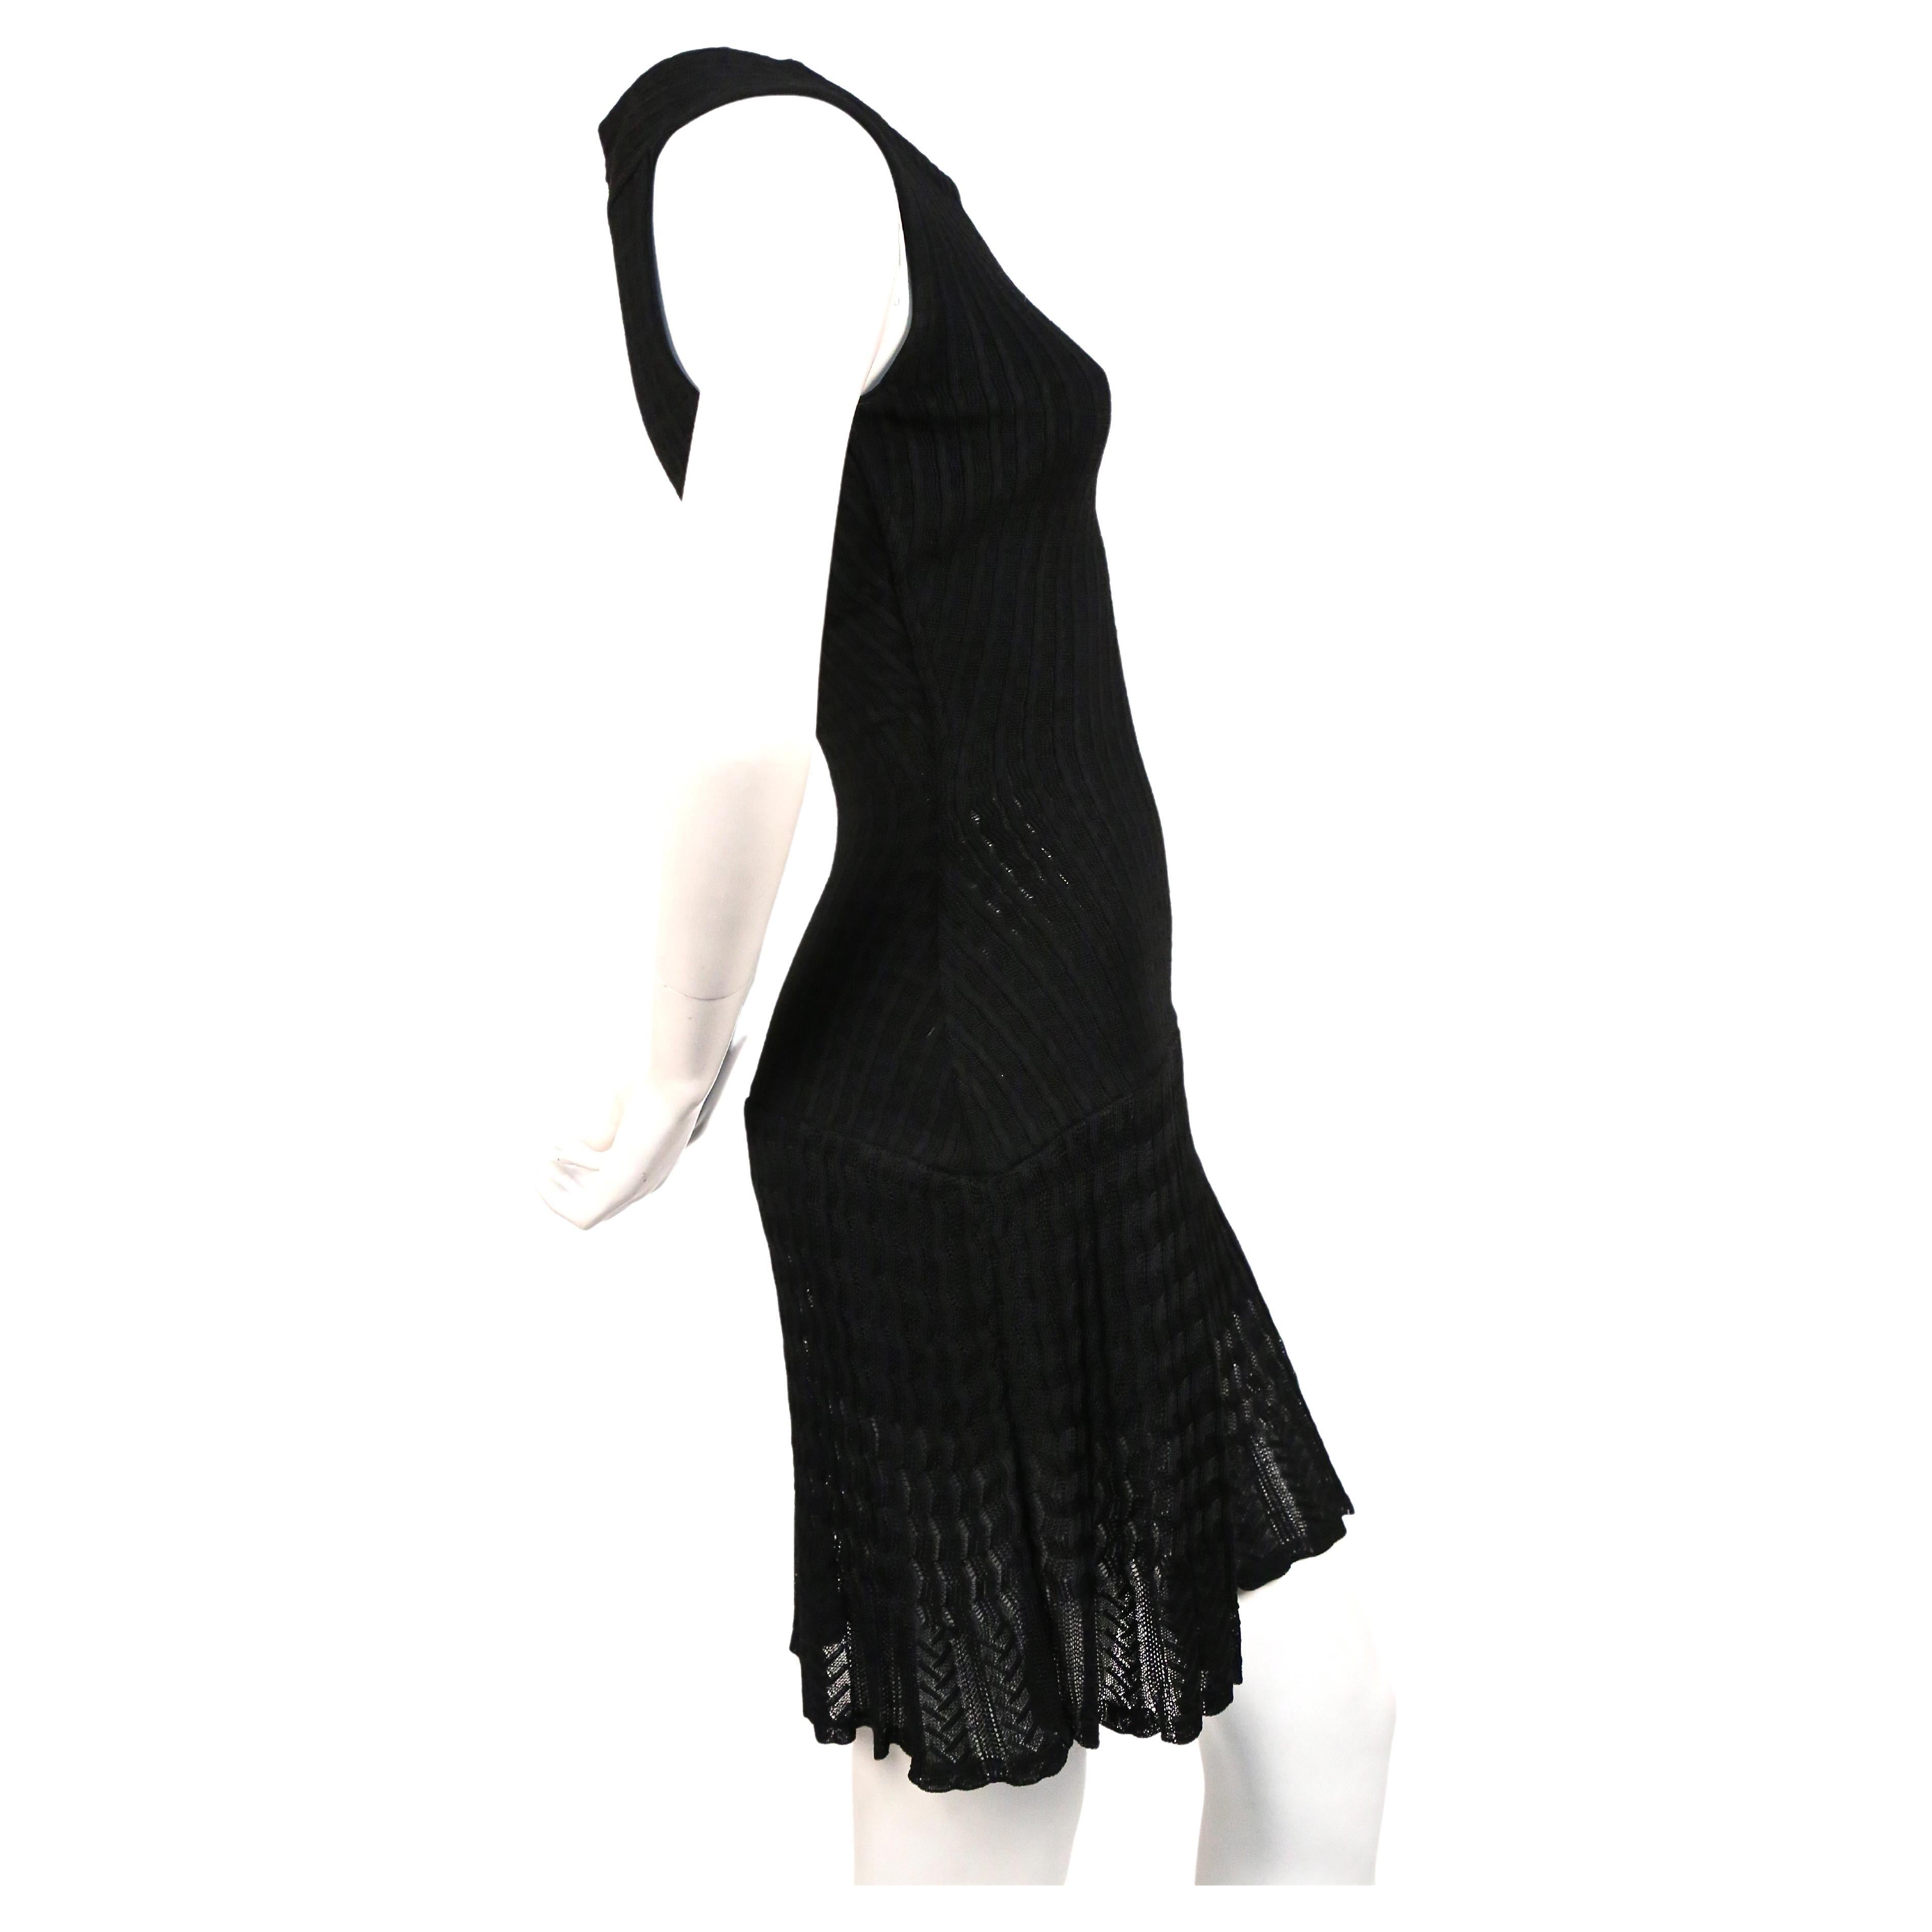 Tiefschwarzes Kleid aus Wollstrick mit halbdurchsichtigem Häkeldetail von Alaia aus den 1990er Jahren. Etikettiert eine Größe klein. Maße ungefähr (ungedehnt): 12,75